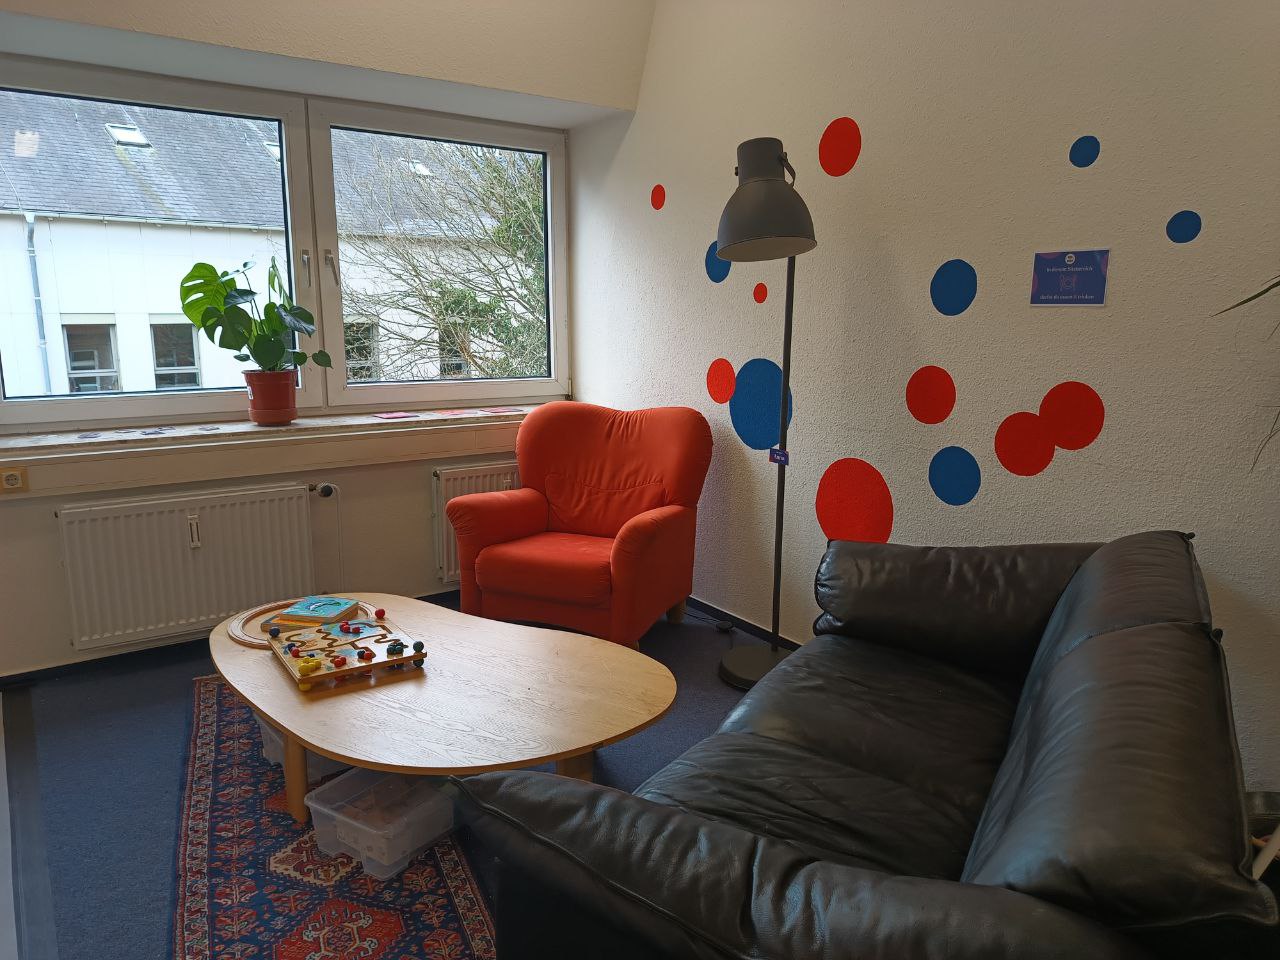 Sofaecke in den Räumlichkeiten der blau:pause Flensburg mit Couch, Sessel und Couchtisch, auf dem Spiele liegen. 